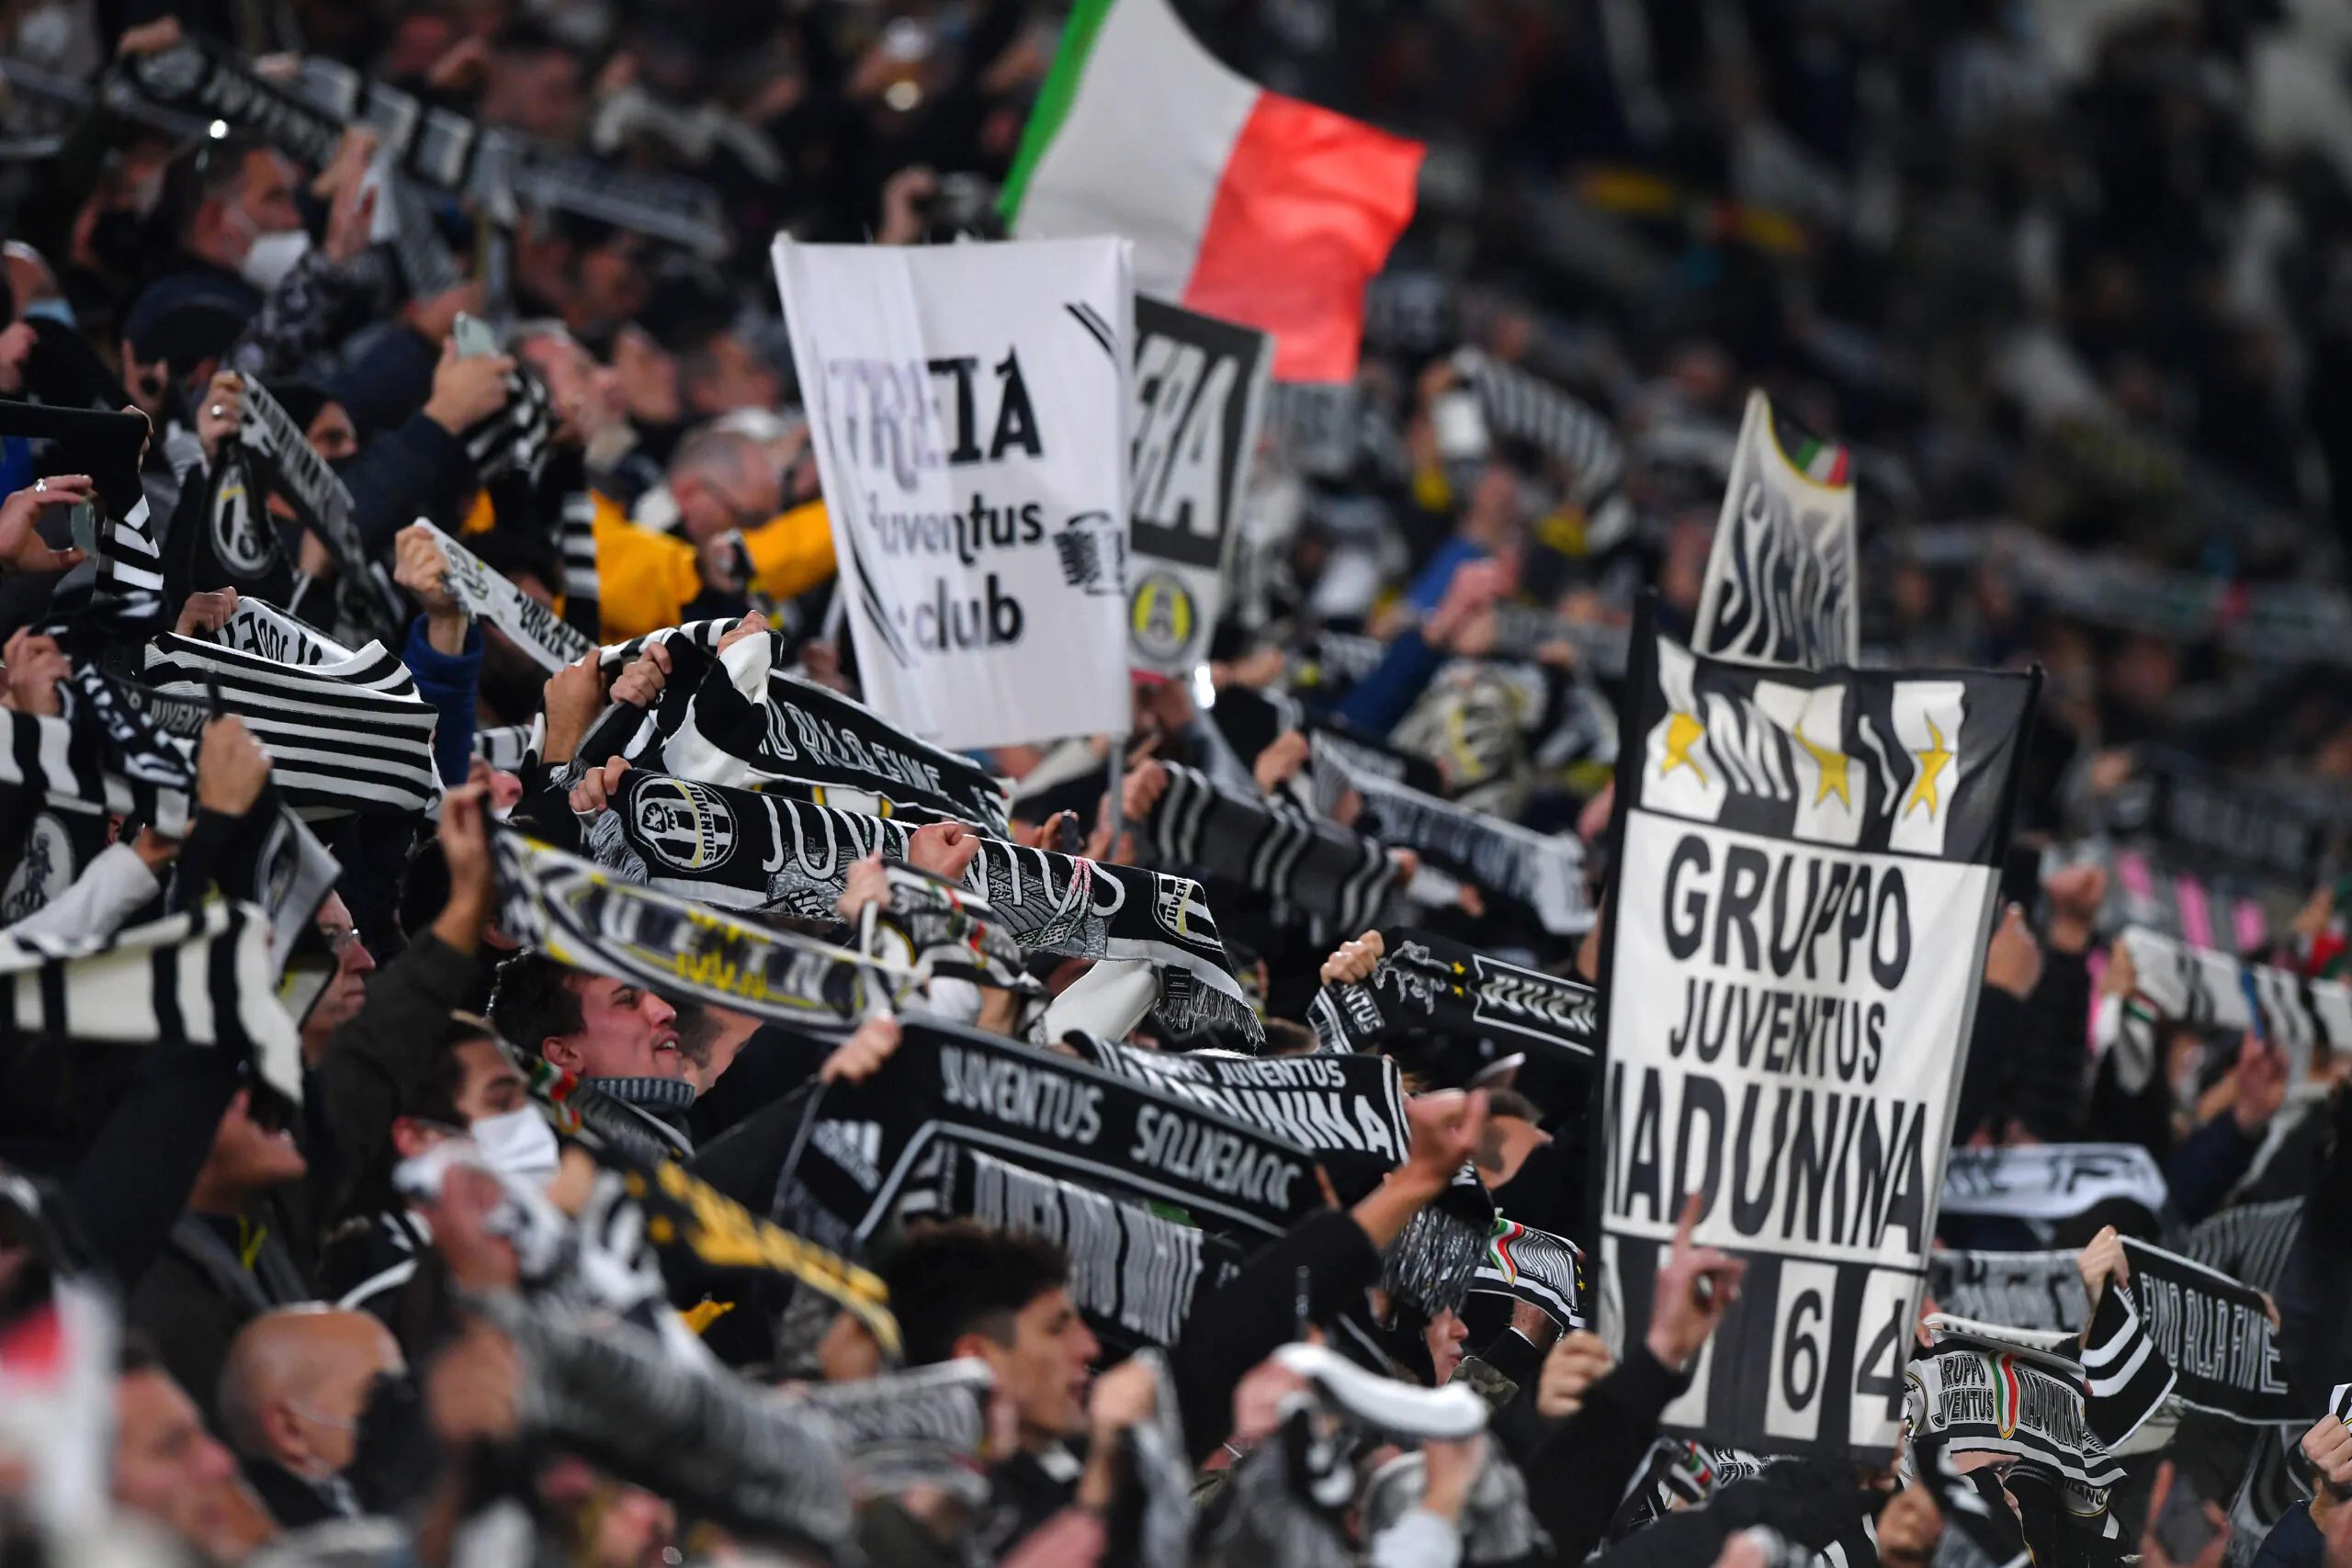 Il giornalista non ha dubbi: “La Juventus rischia la Serie B”